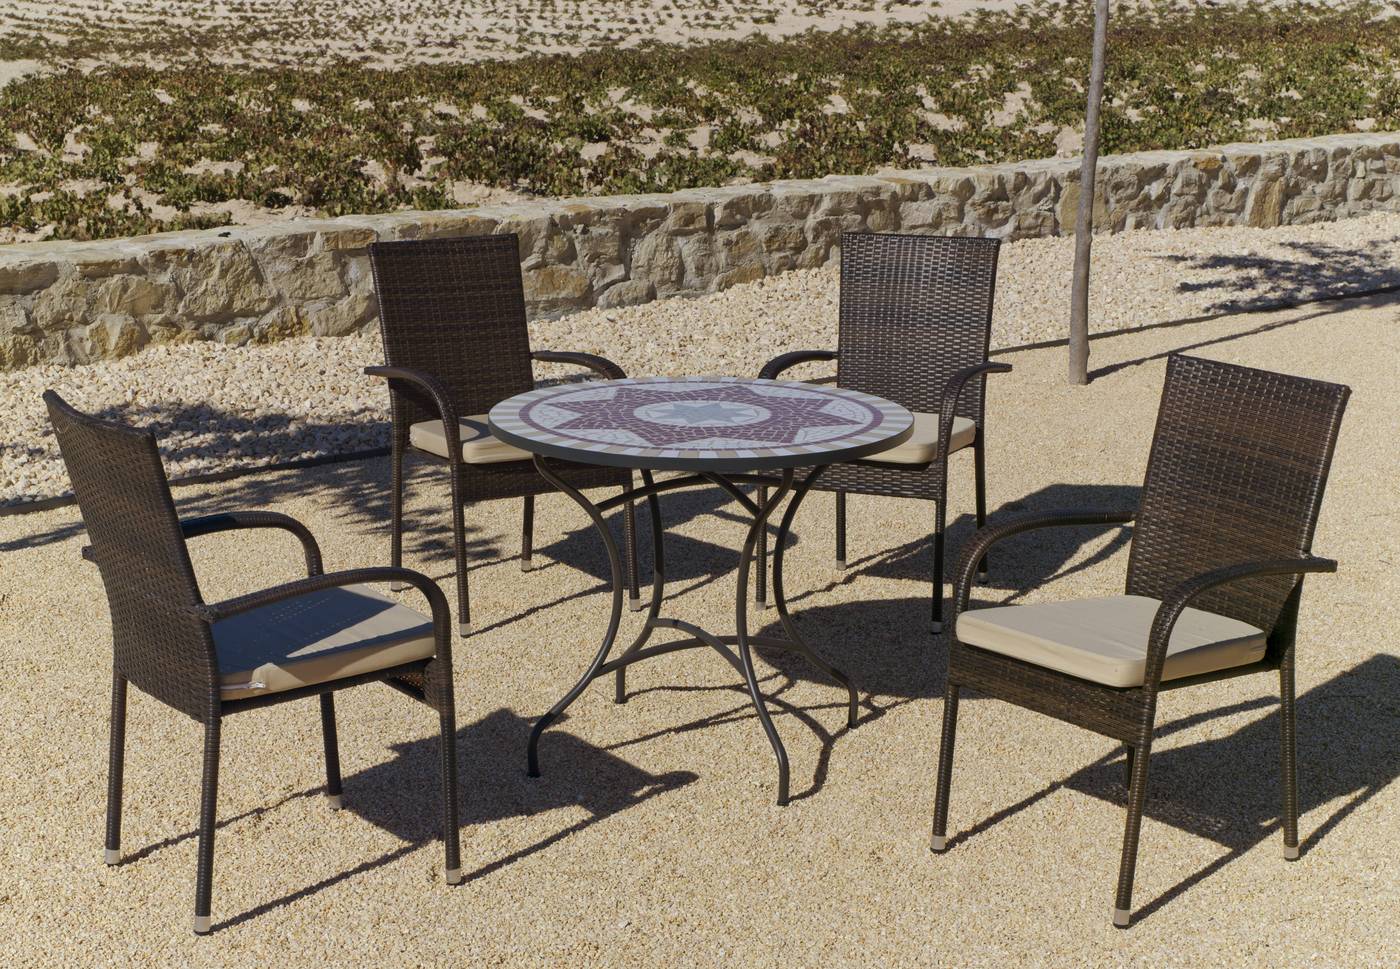 Conjunto de acero forjado color bronce: 1 mesa de forja con panel mosaico + 4 sillones de ratán sintético + 4 cojines